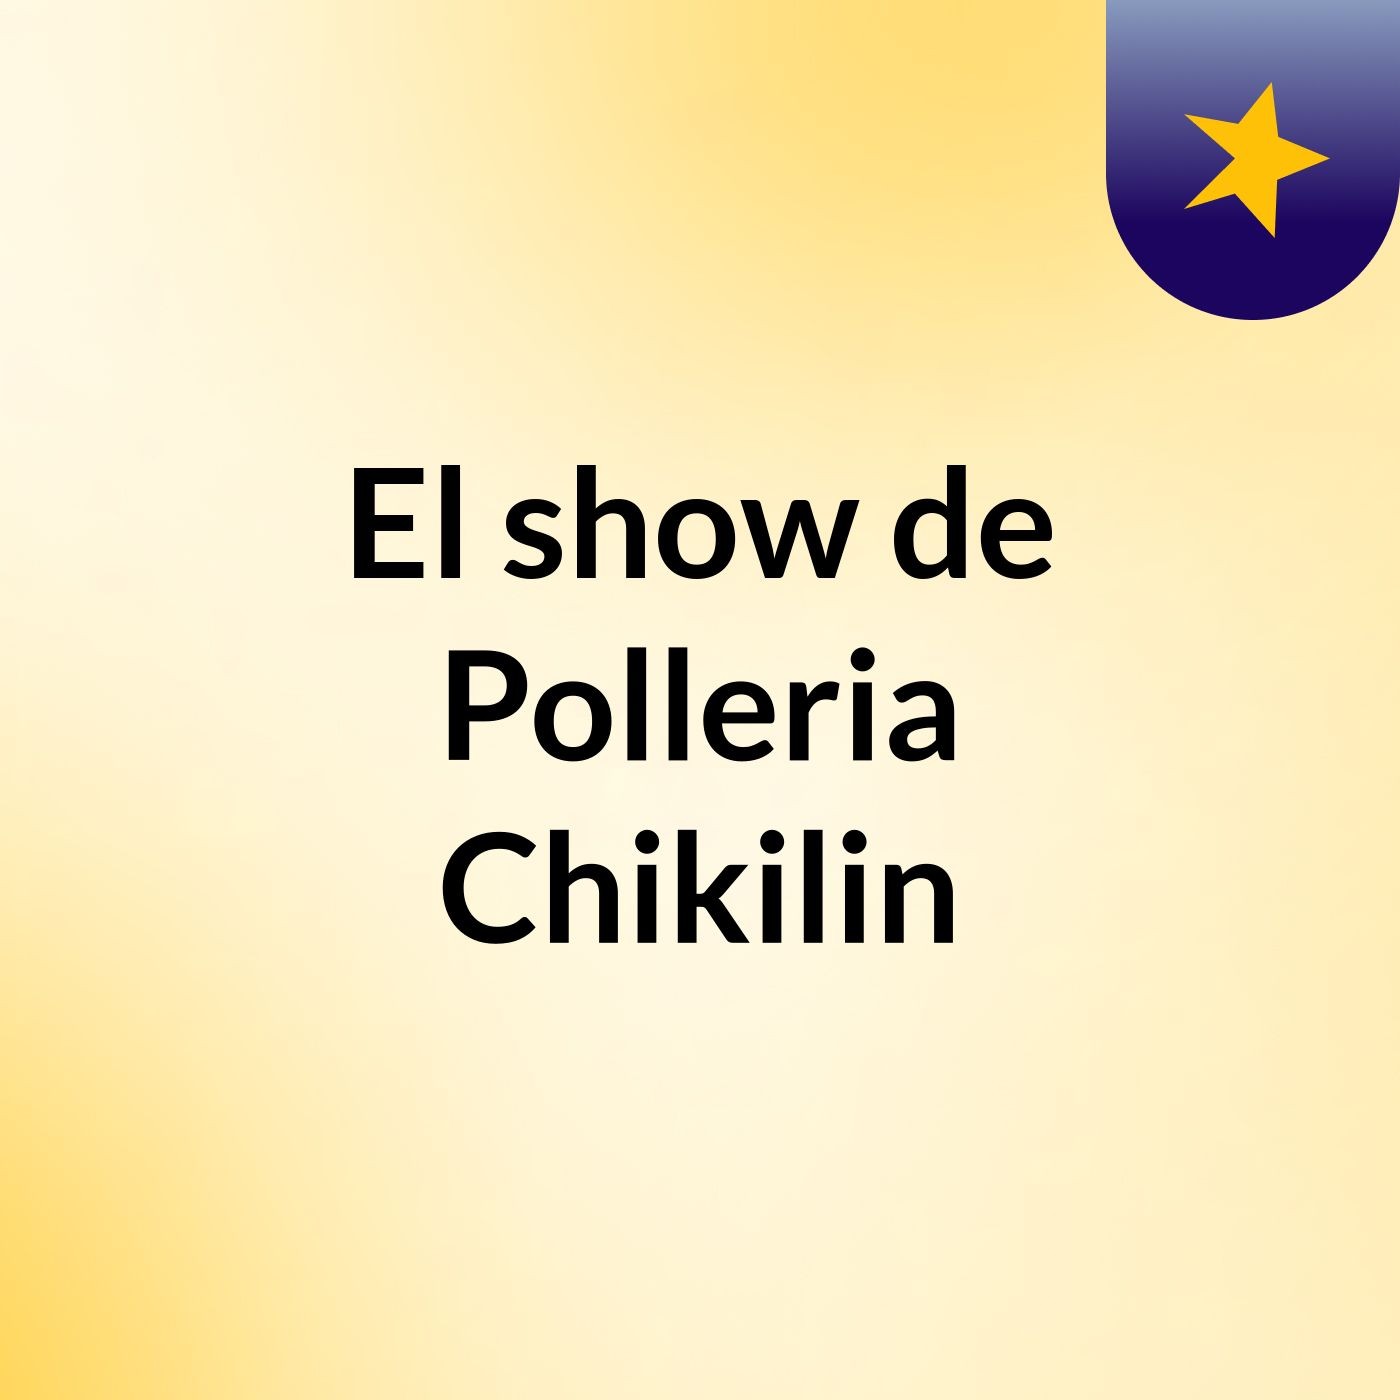 El show de Polleria Chikilin